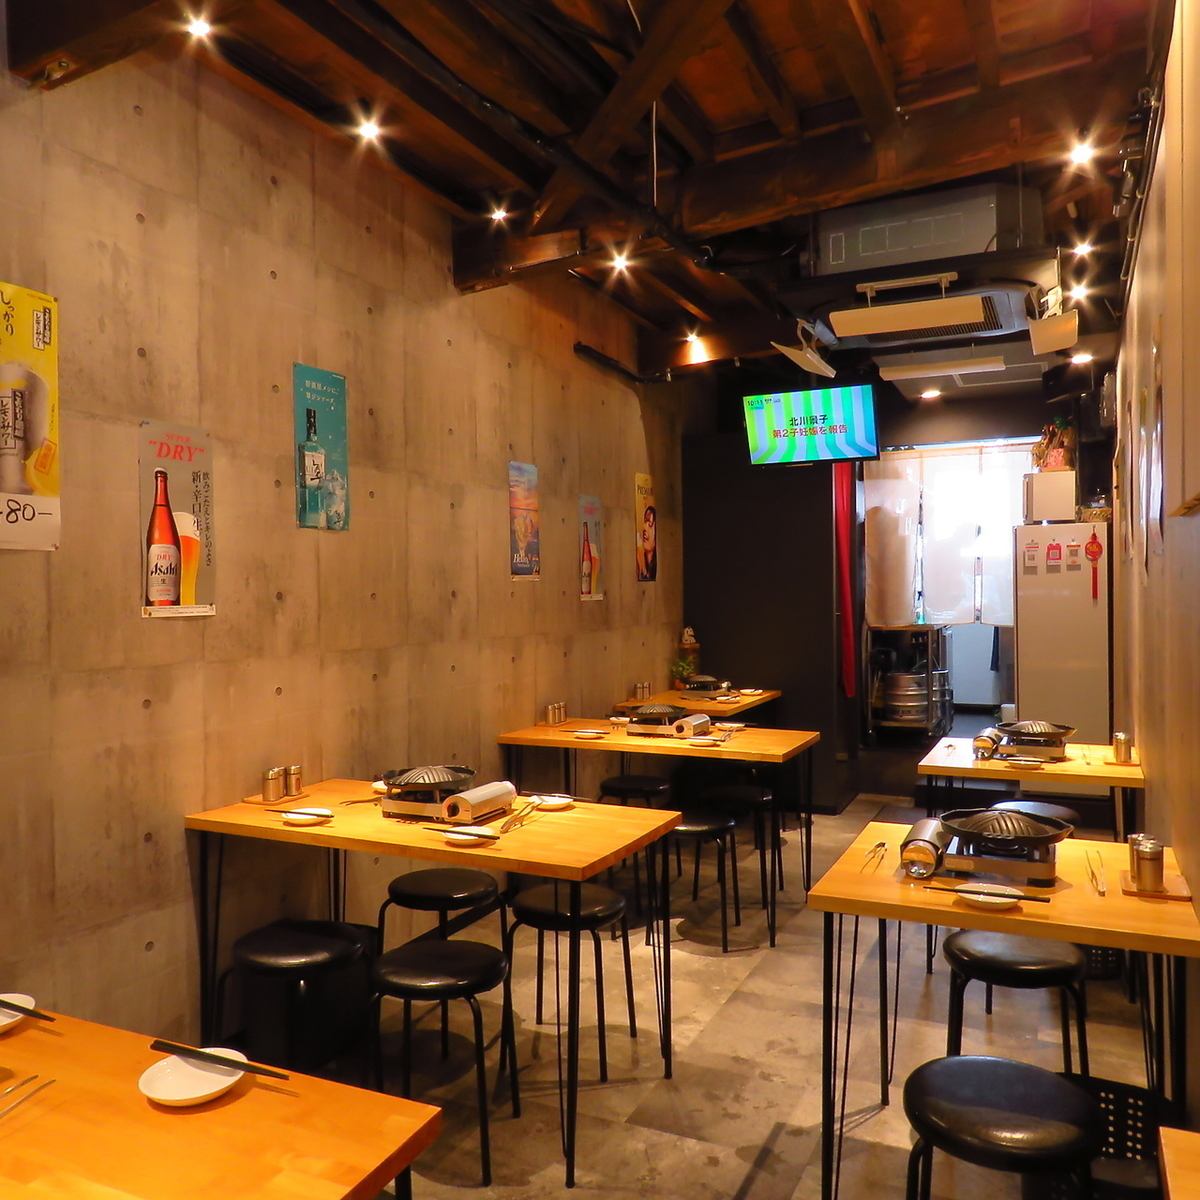 카페와 같은 세련된 공간에서 일품 징기스칸을 맛볼 수 있습니다 ♪